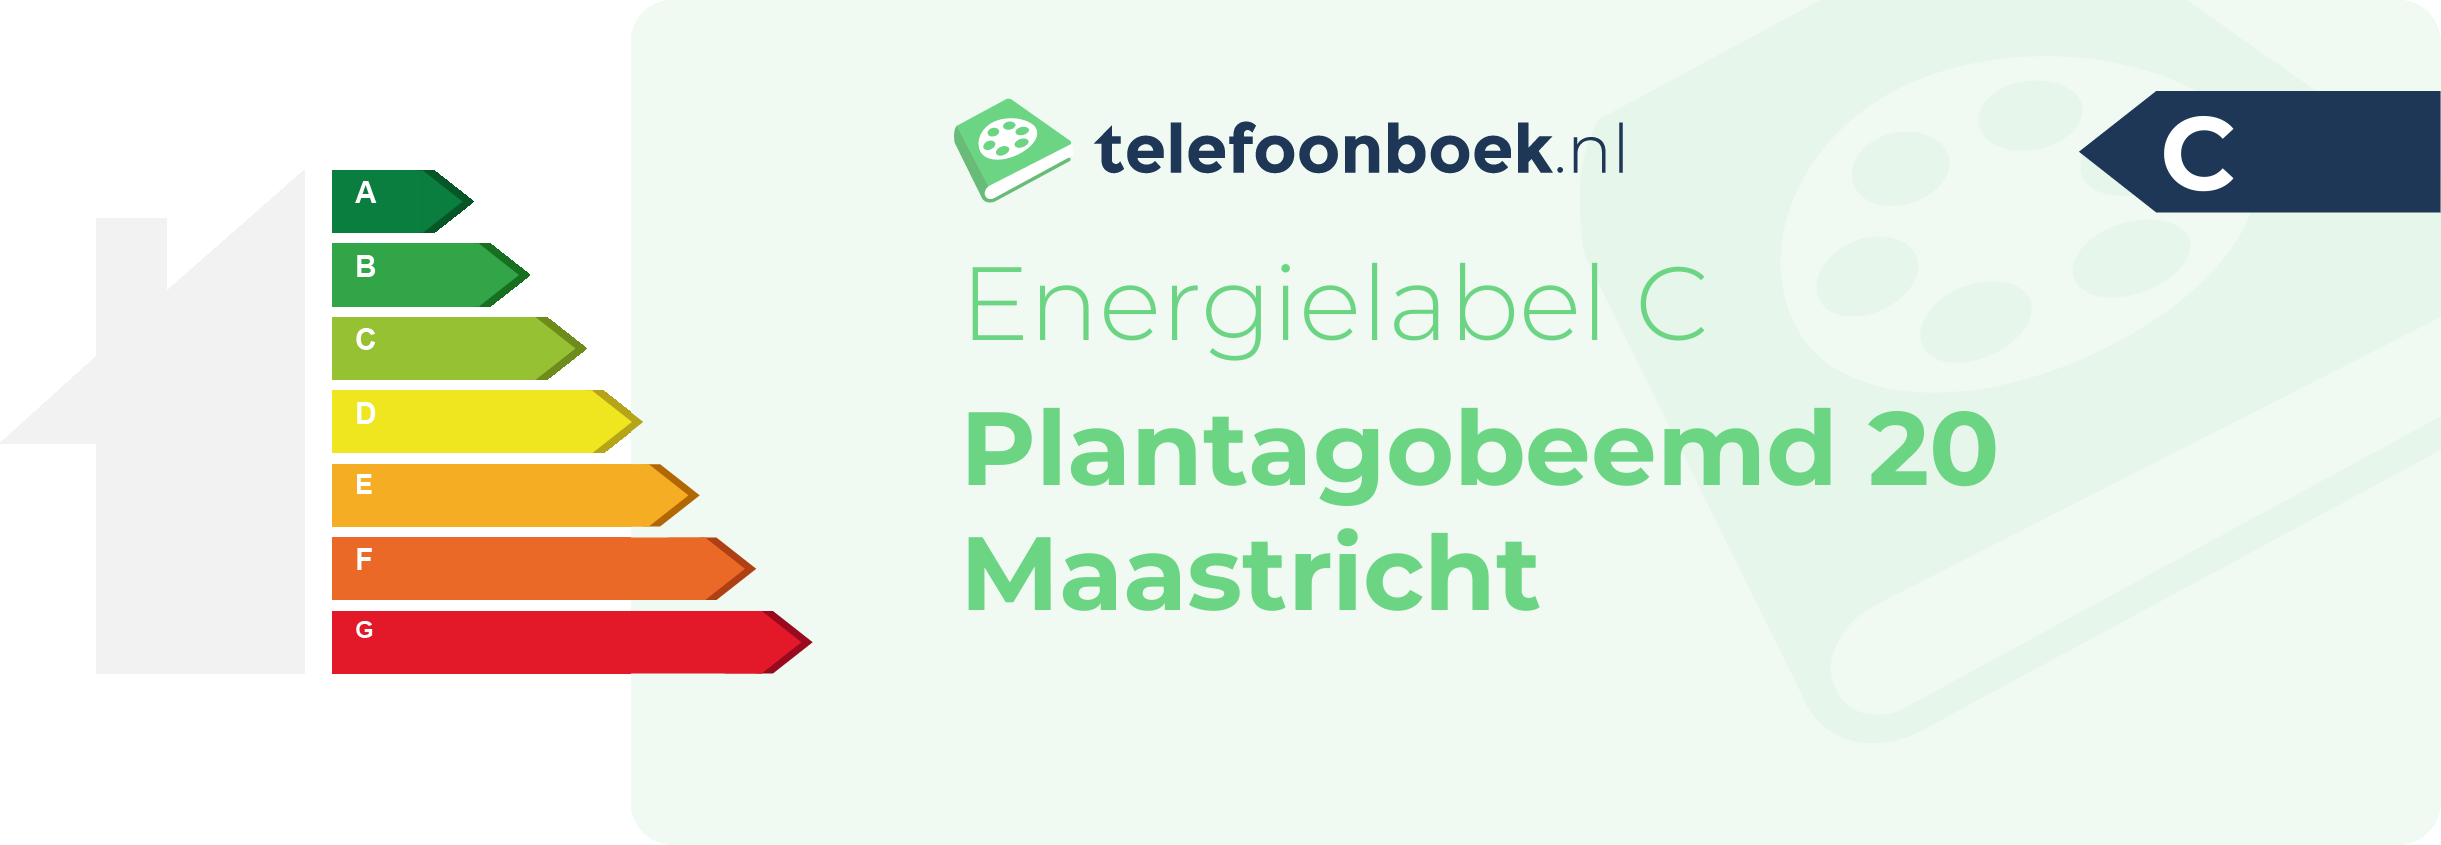 Energielabel Plantagobeemd 20 Maastricht